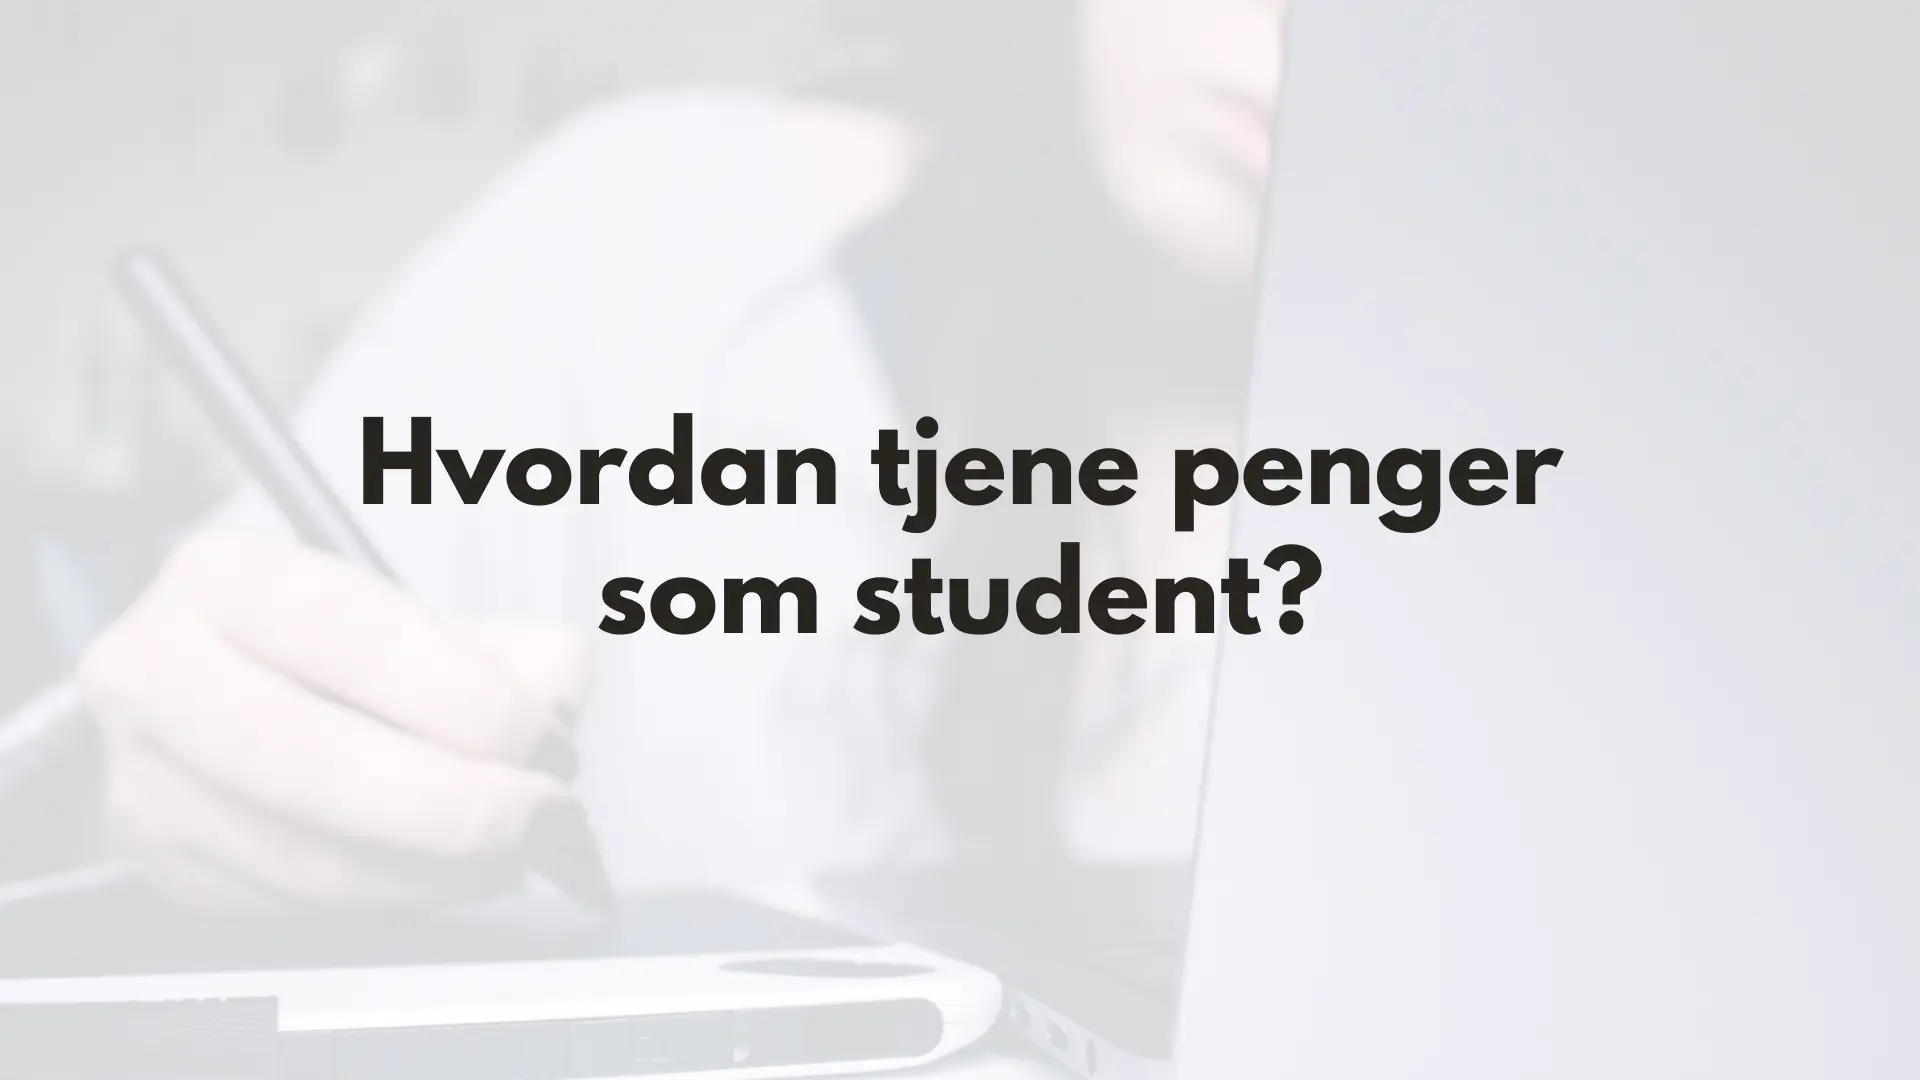 Tjene penger som student - forsidebilde med bilde av jente foran laptop og tekst